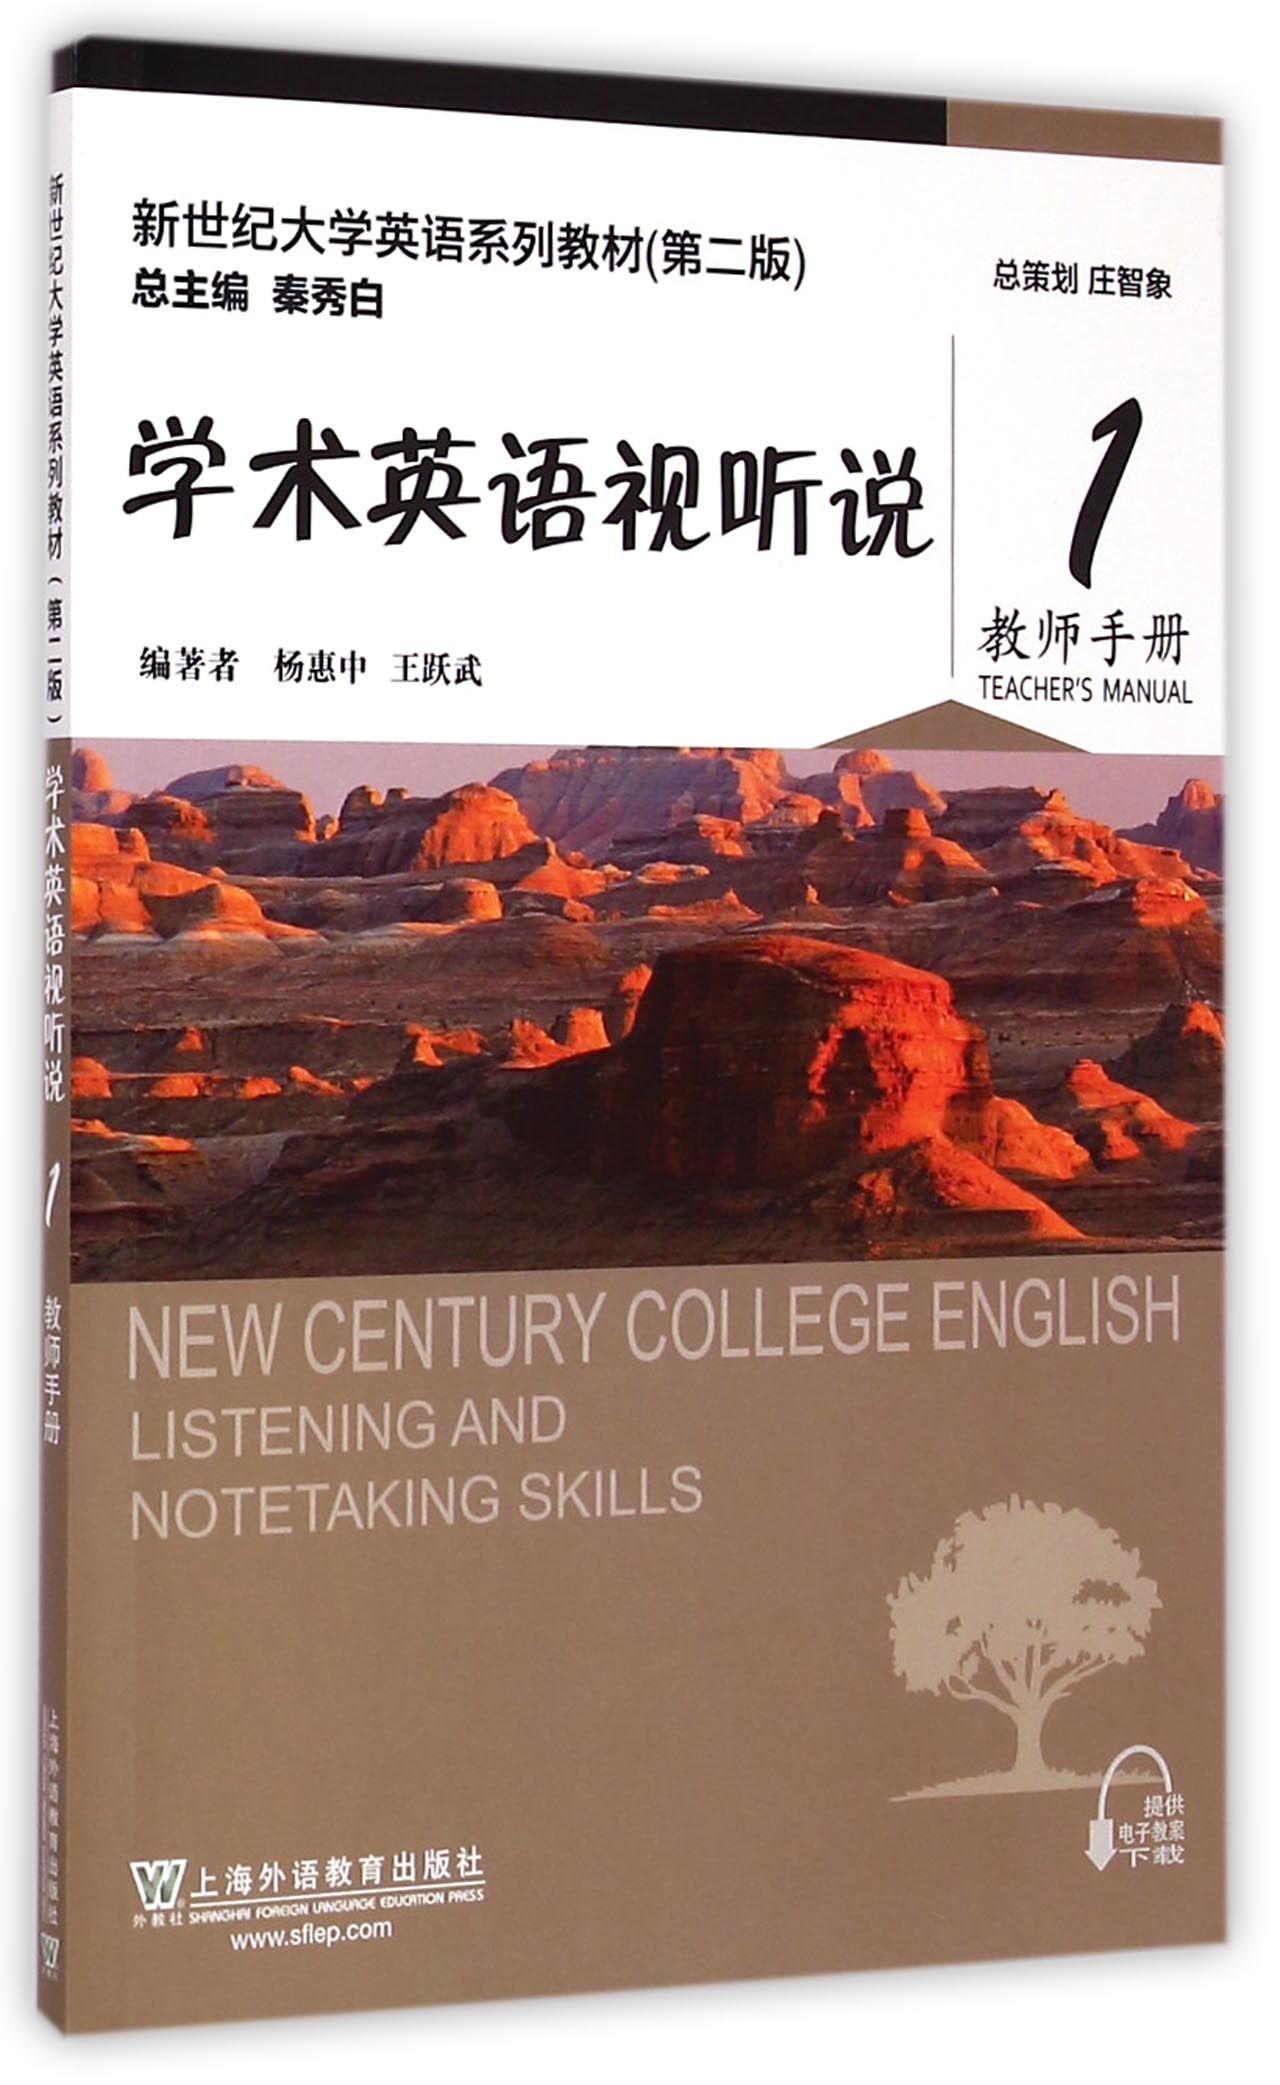 学术英语视听说(1教师手册第2版新世纪大学英